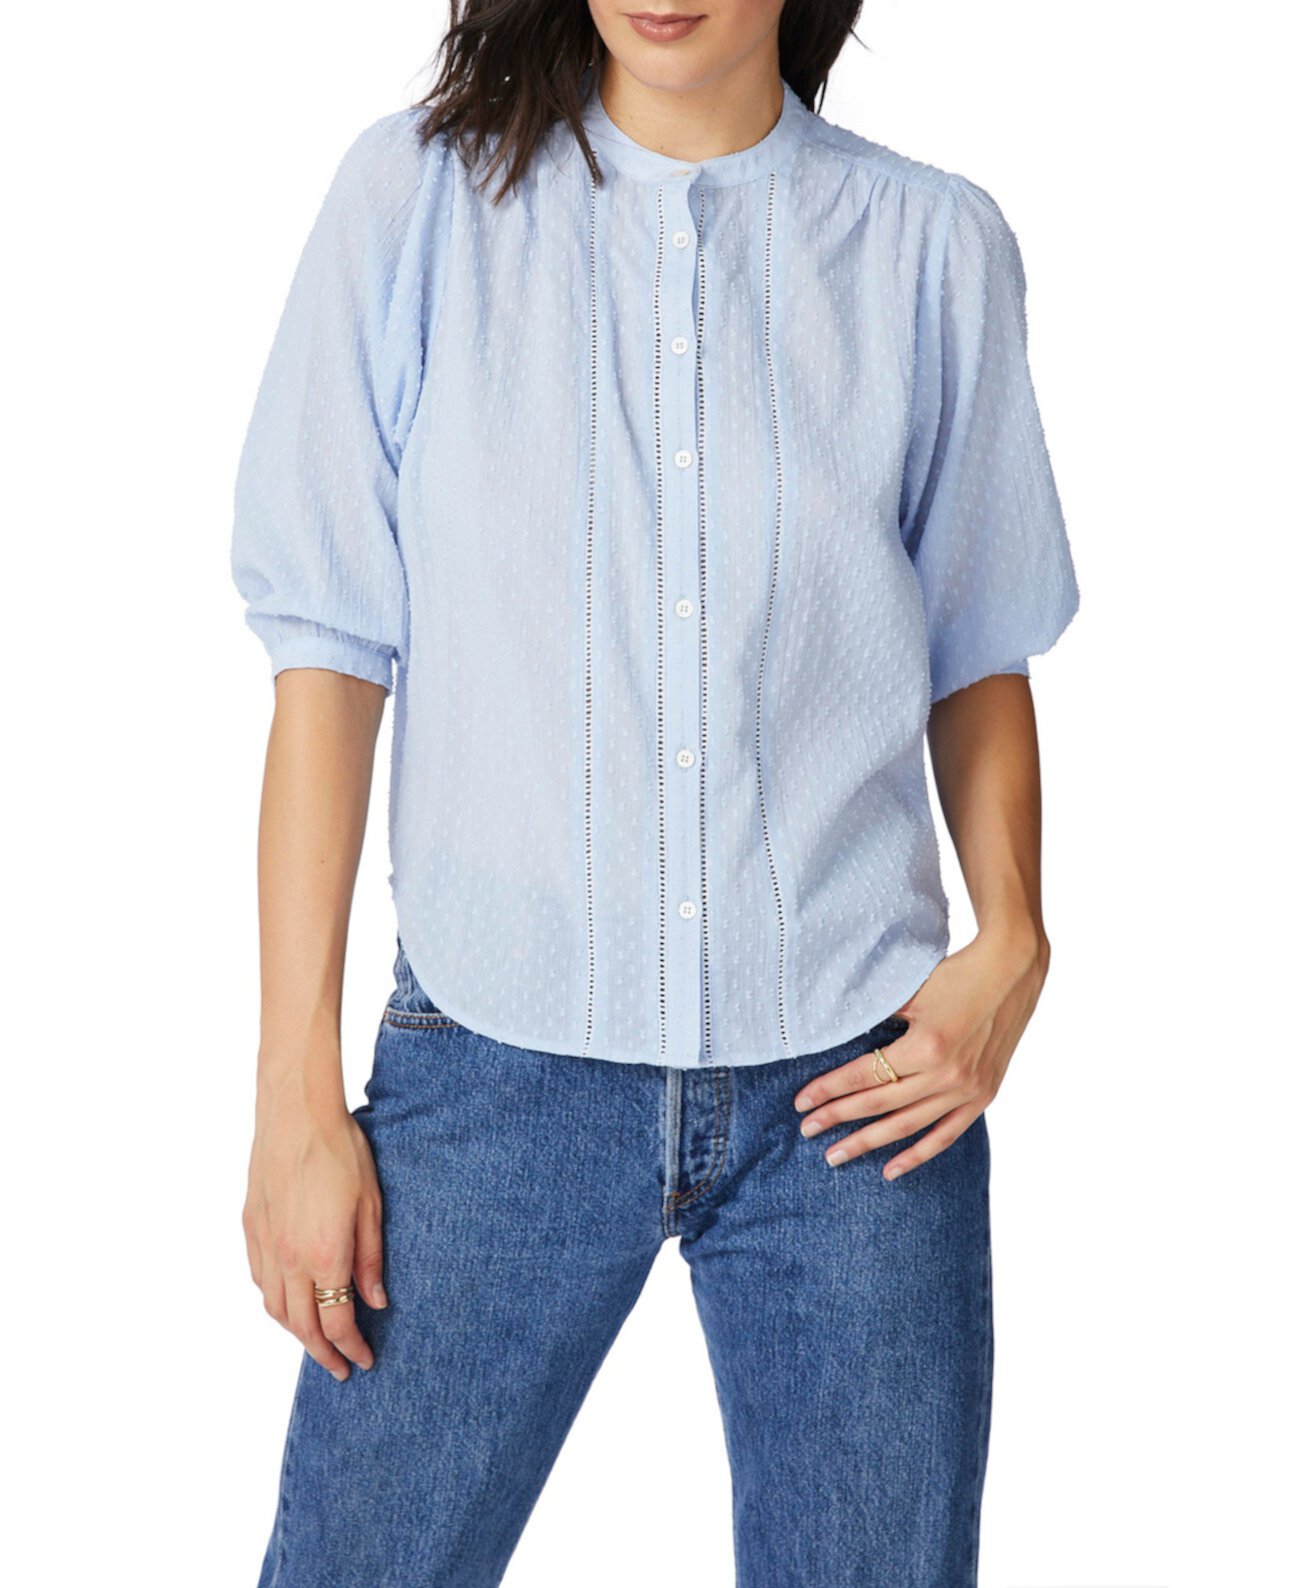 Женская блузка с мятой застежкой и пуговицами спереди с рукавом 3/4 COURT & ROWE